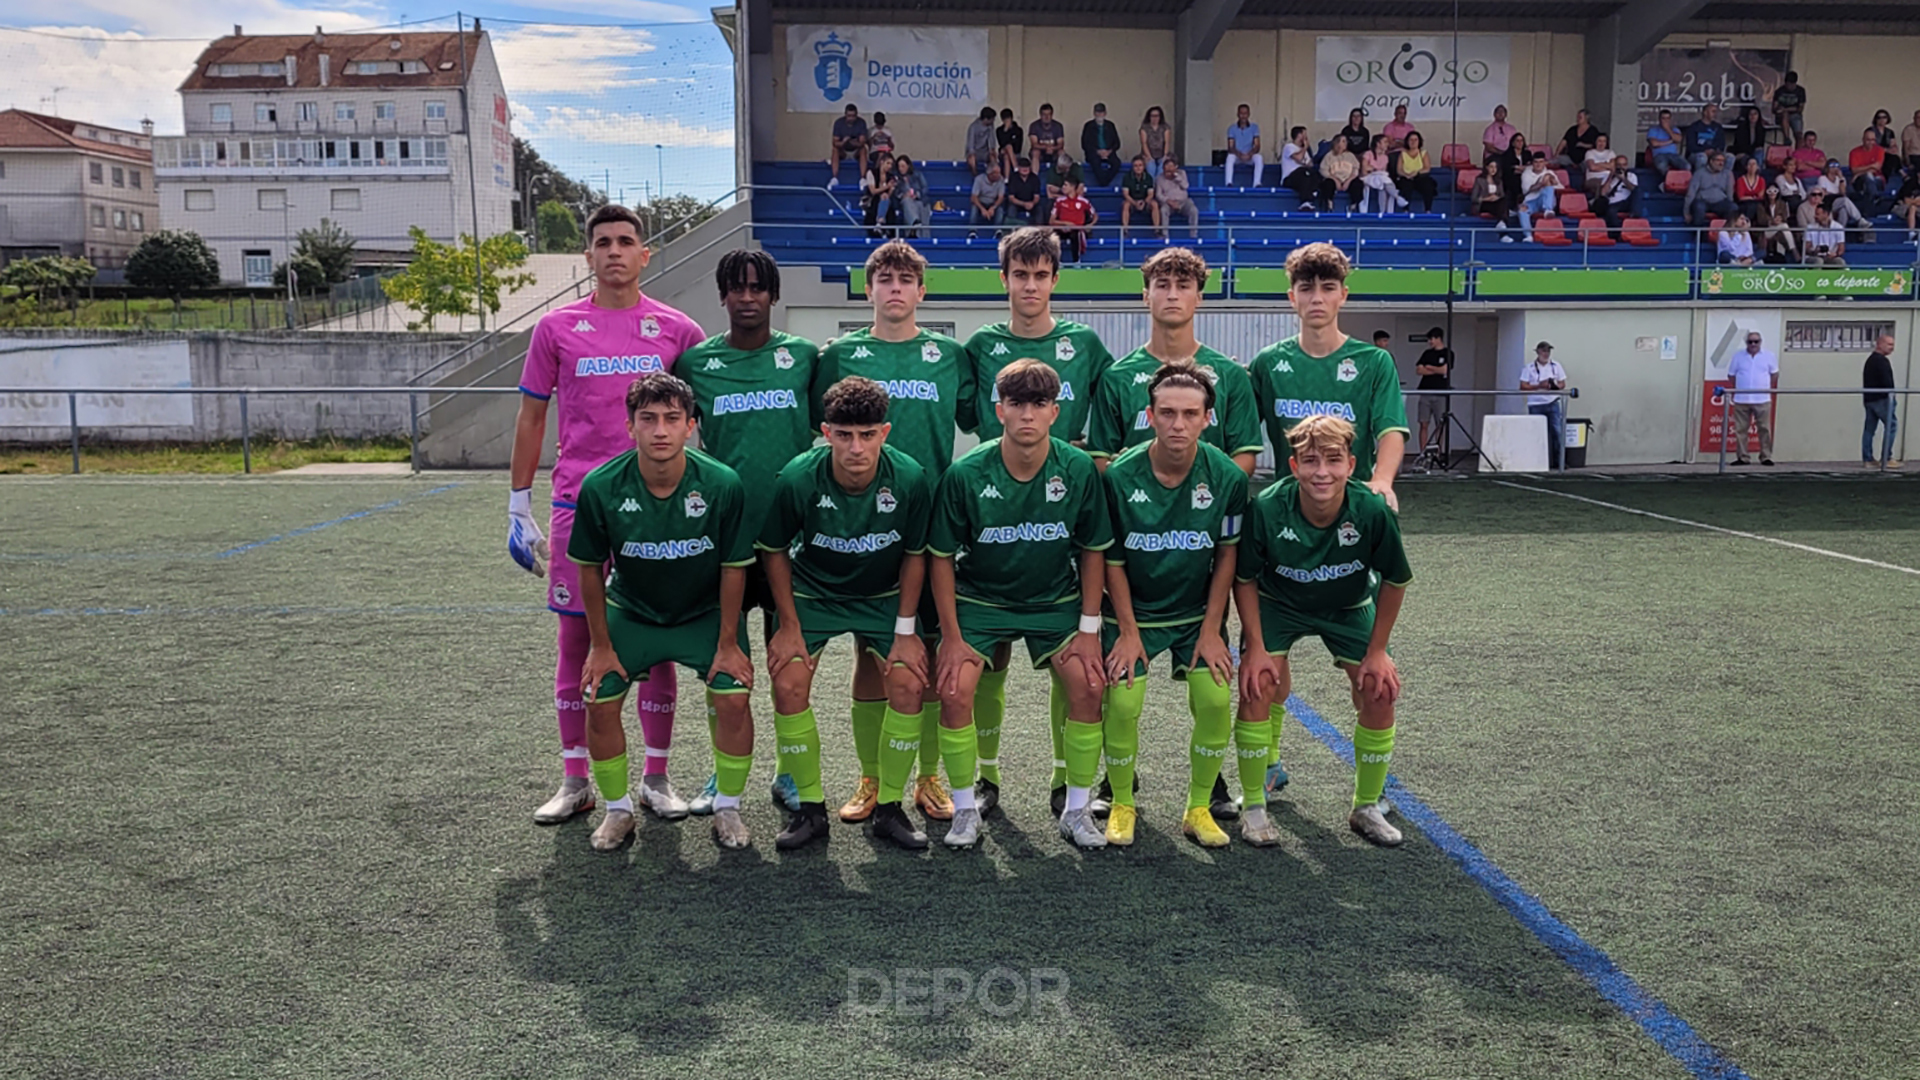 El RC Deportivo de la Coruña alza su 2ª Copa Campeones juvenil tras vencer  al FC Barcelona (3-1) en Marbella - Al Sol de la Costa